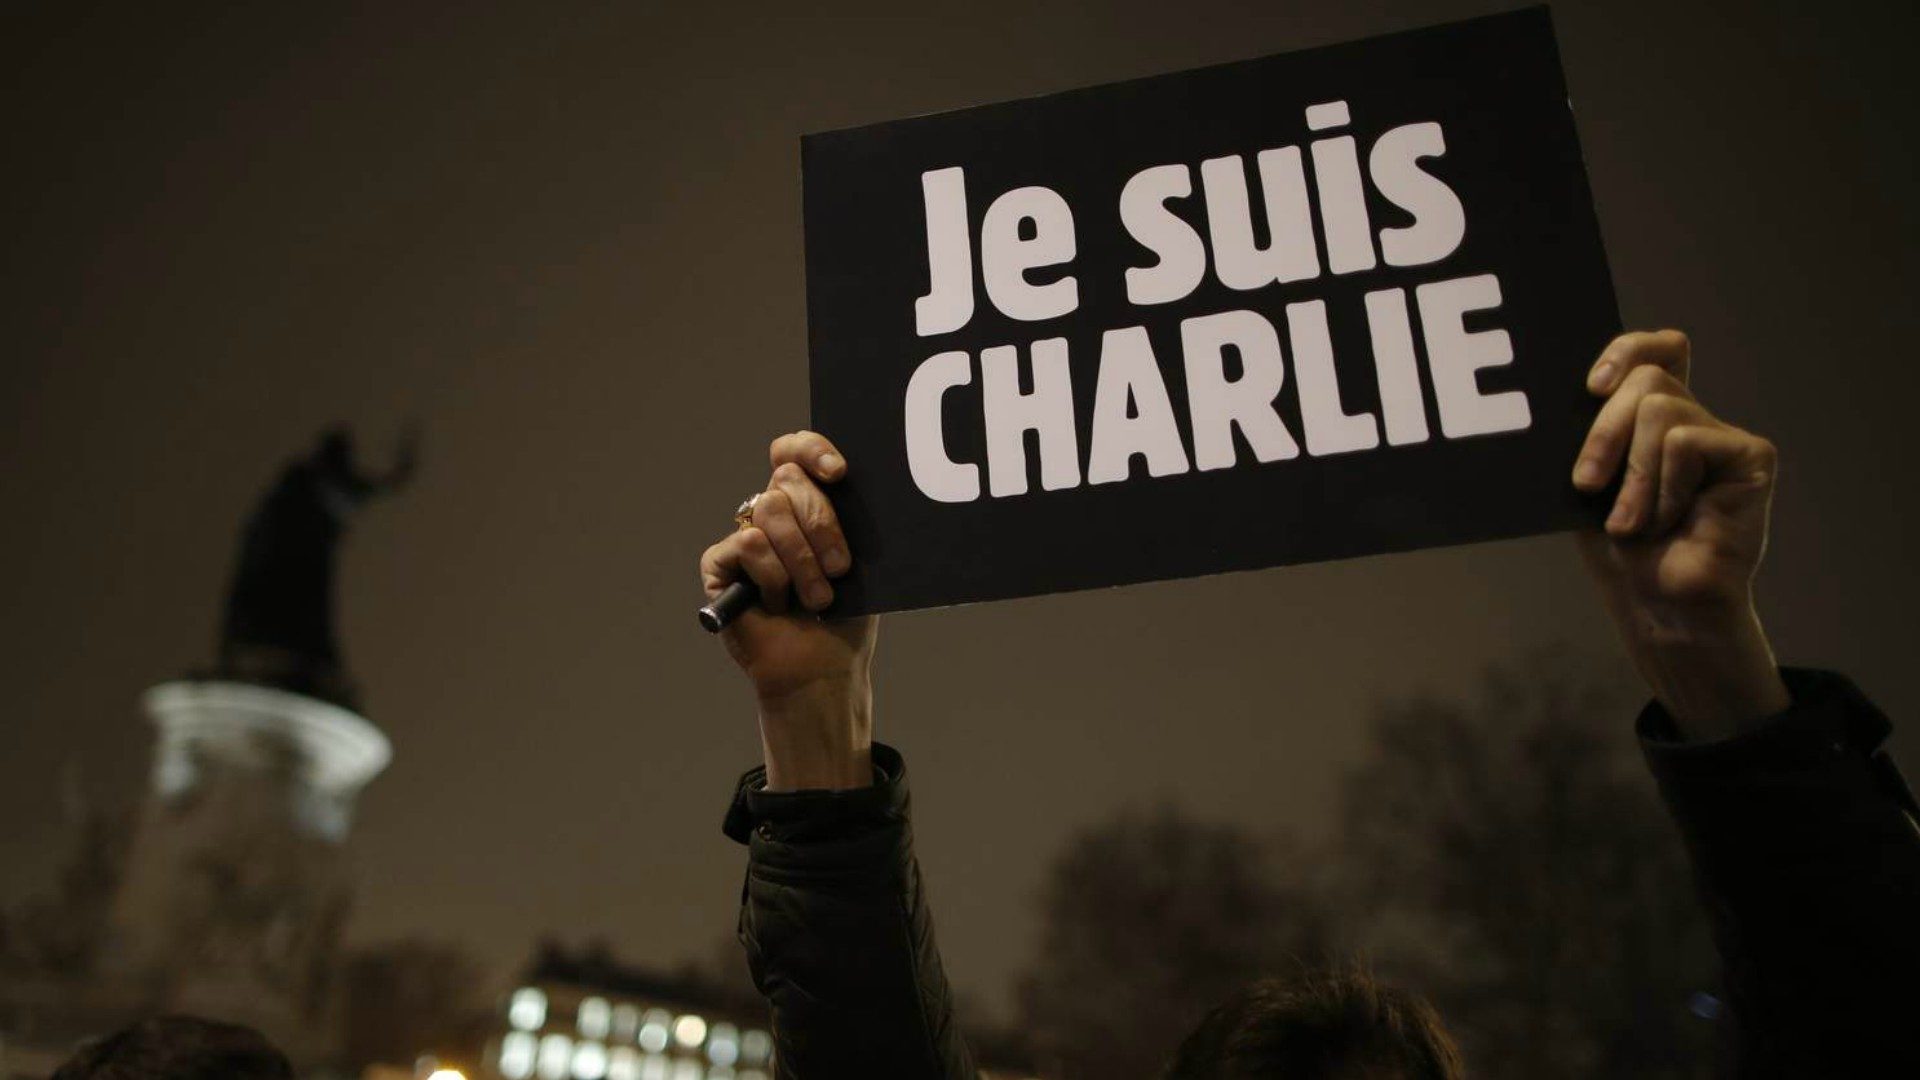 Certains jeunes Français estiment que les victimes de Charlie Hebdo "l'ont bien cherché" (Photo: Keno Photography/Flickr/CC BY-NC-ND 2.0)